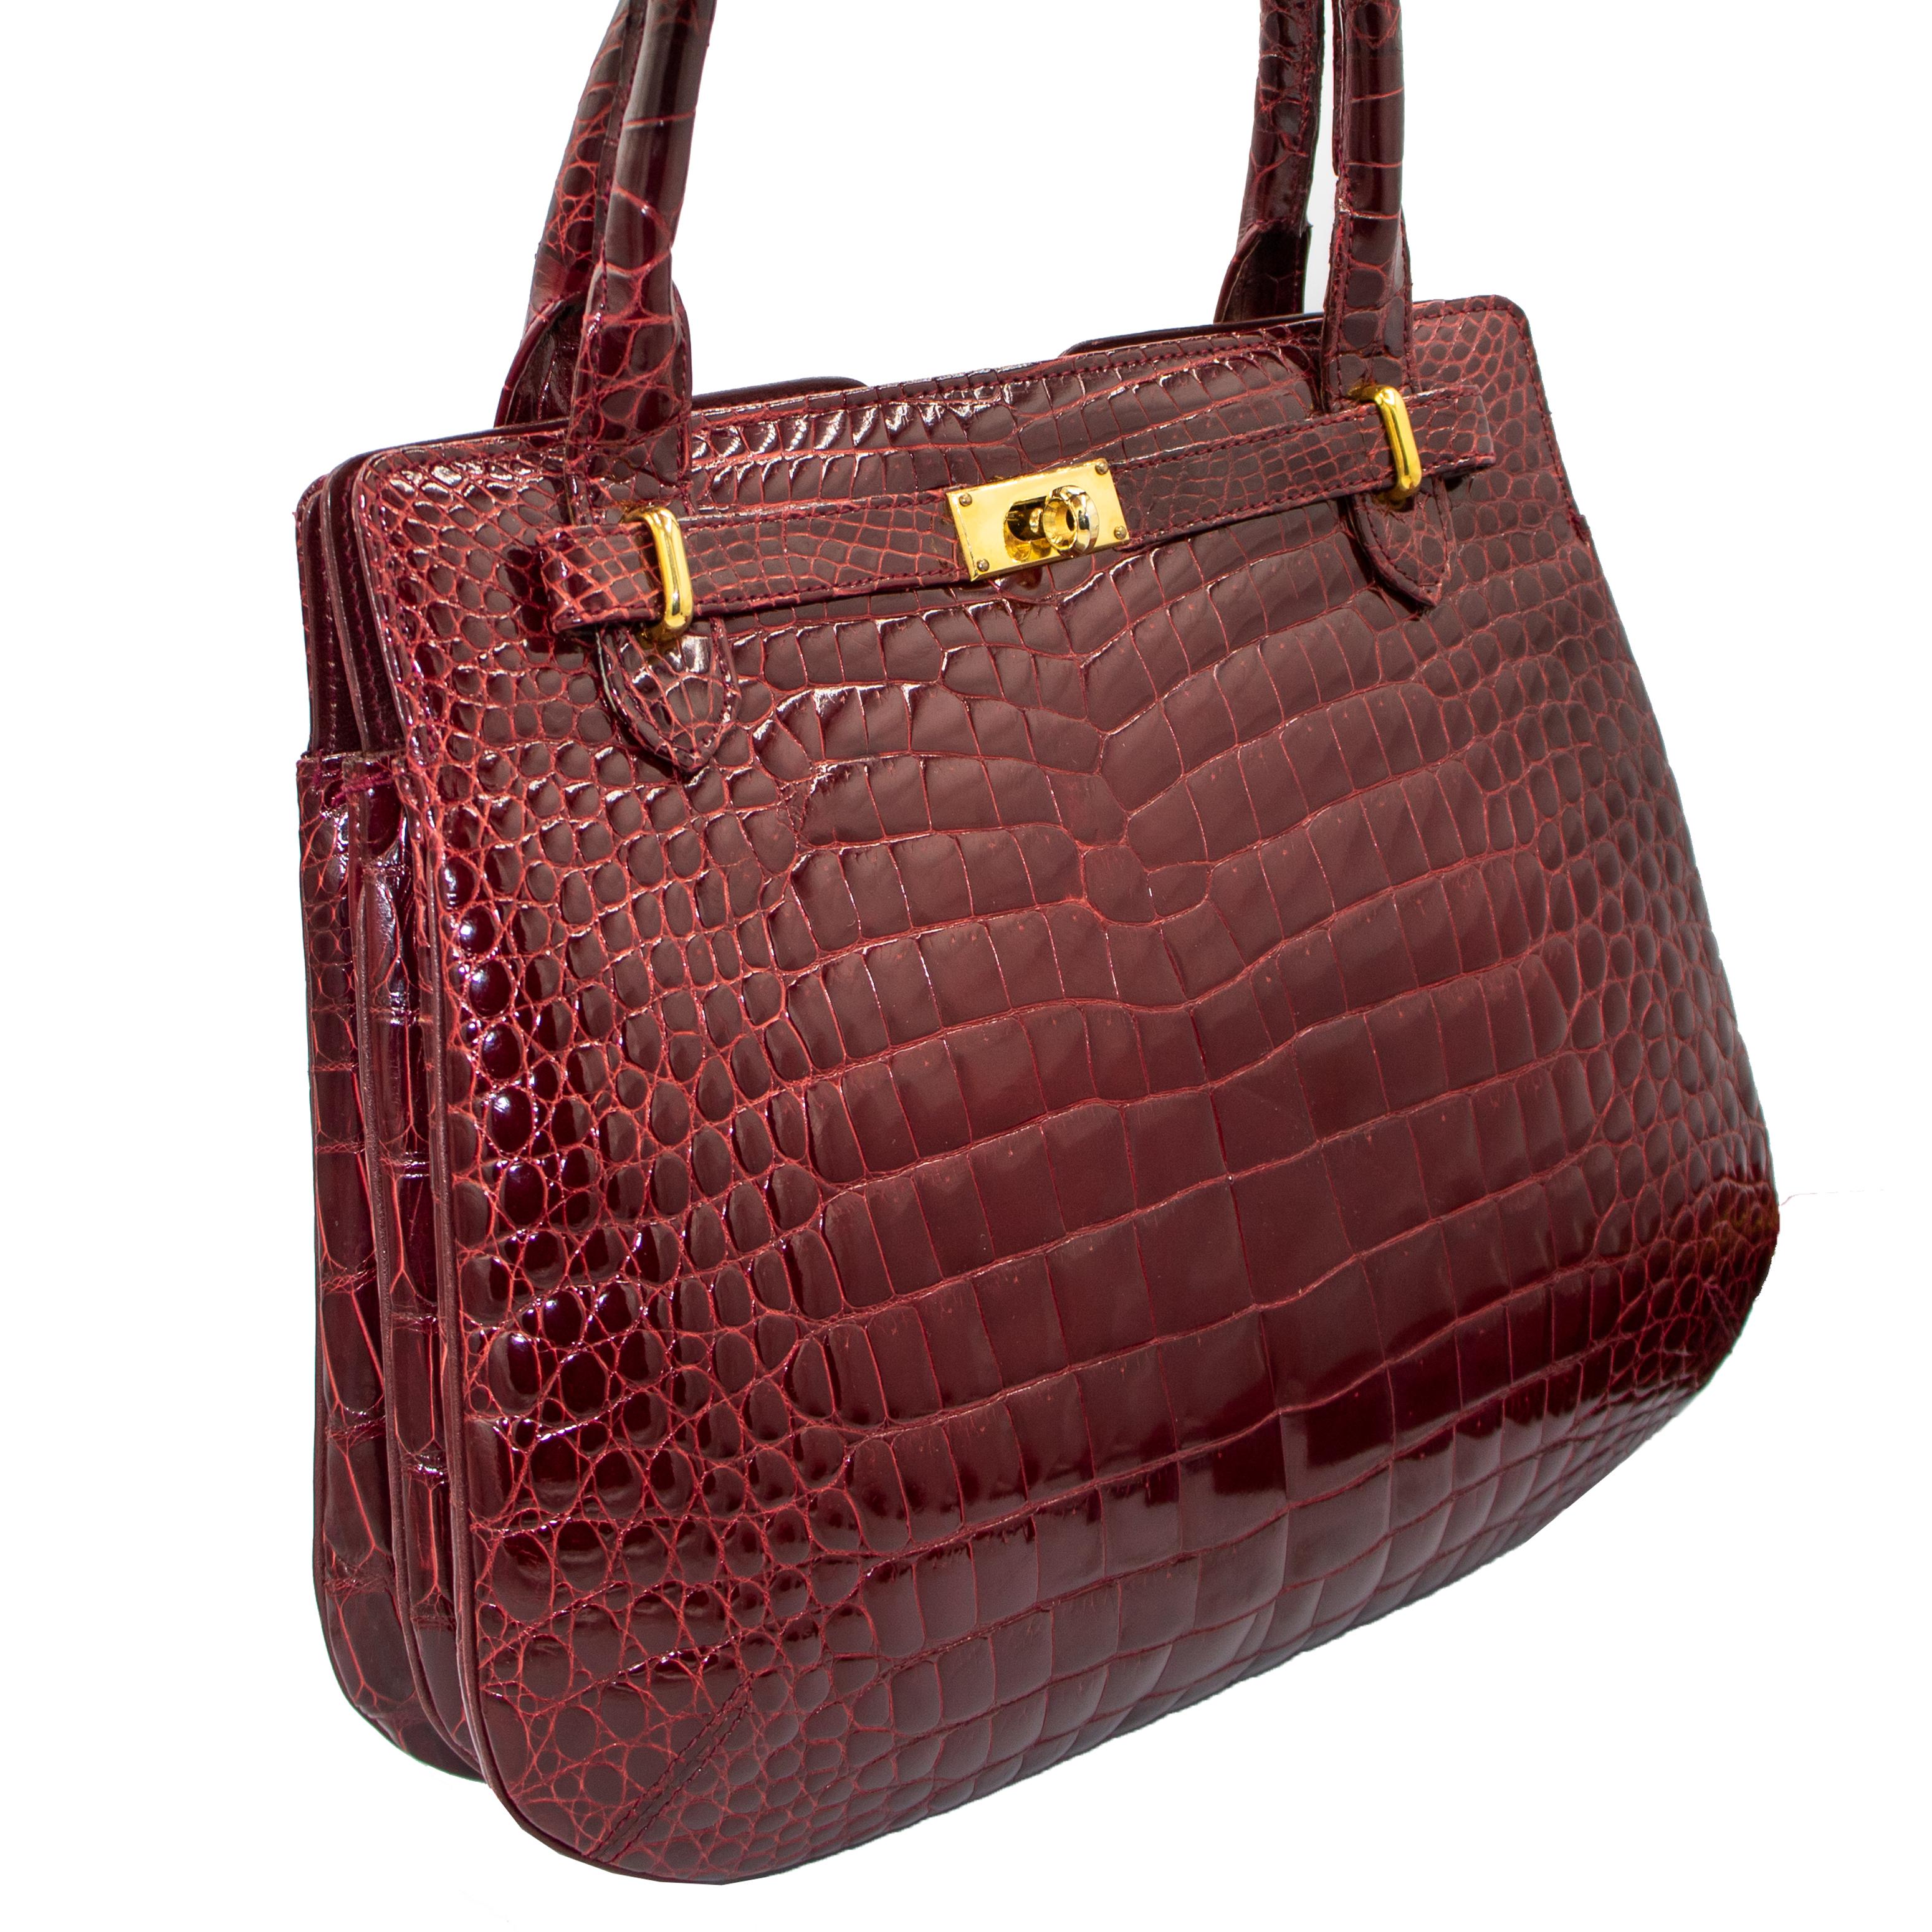 Veloso\u2019s Gift Shop embroidered wooden handle handbag Vintage 1960s